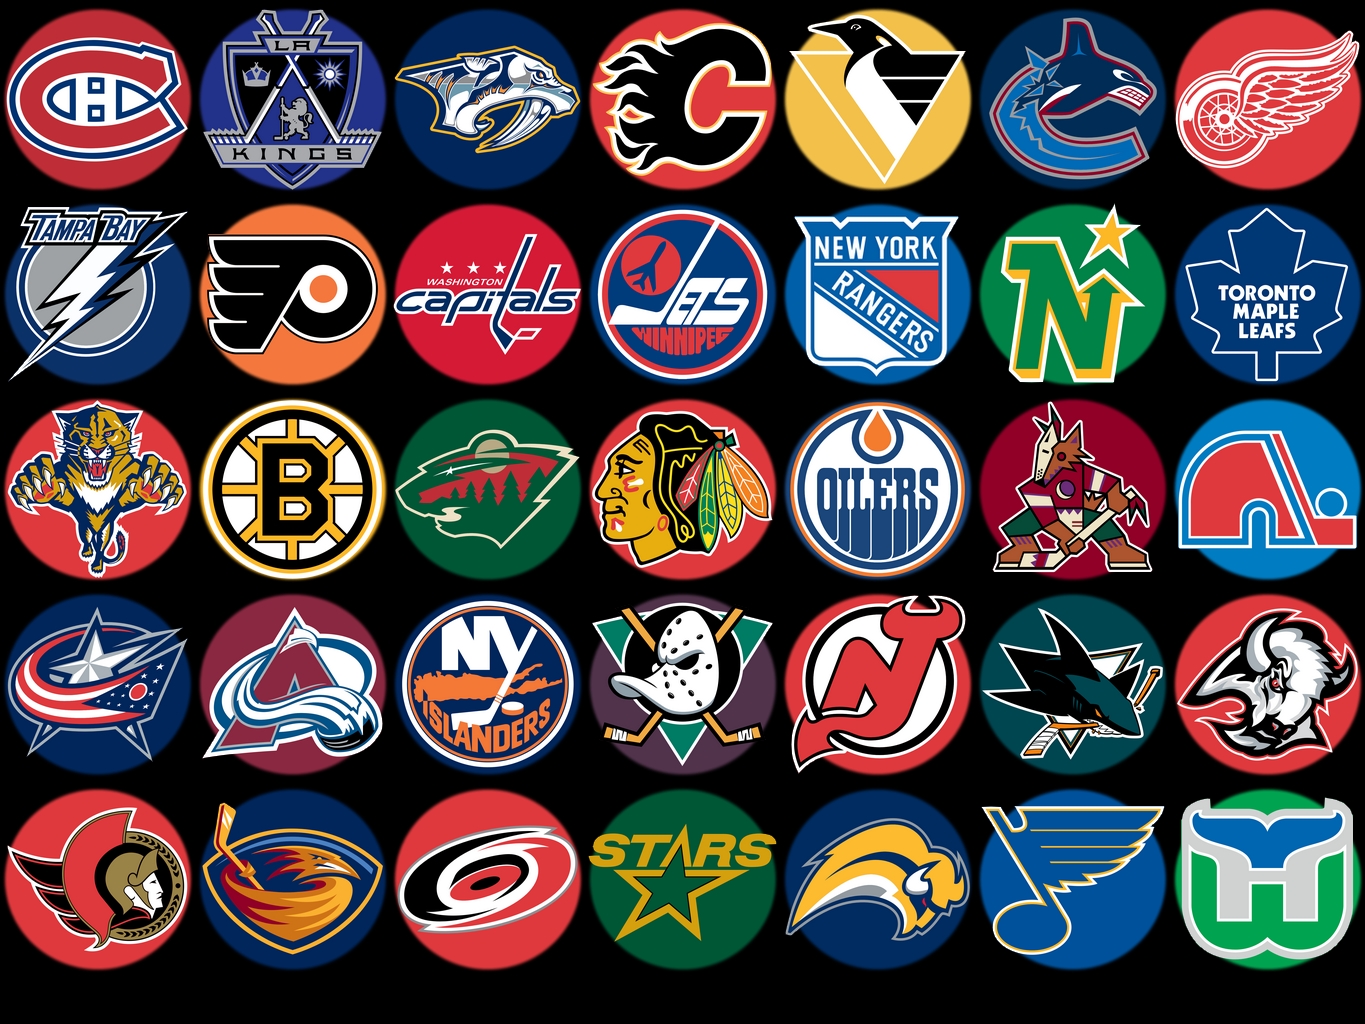 Логотипы команд нхл. Хоккейные команды НХЛ. Значки хоккейных команд НХЛ. Эмблемы NHL команд. Хоккейные команды NHL.